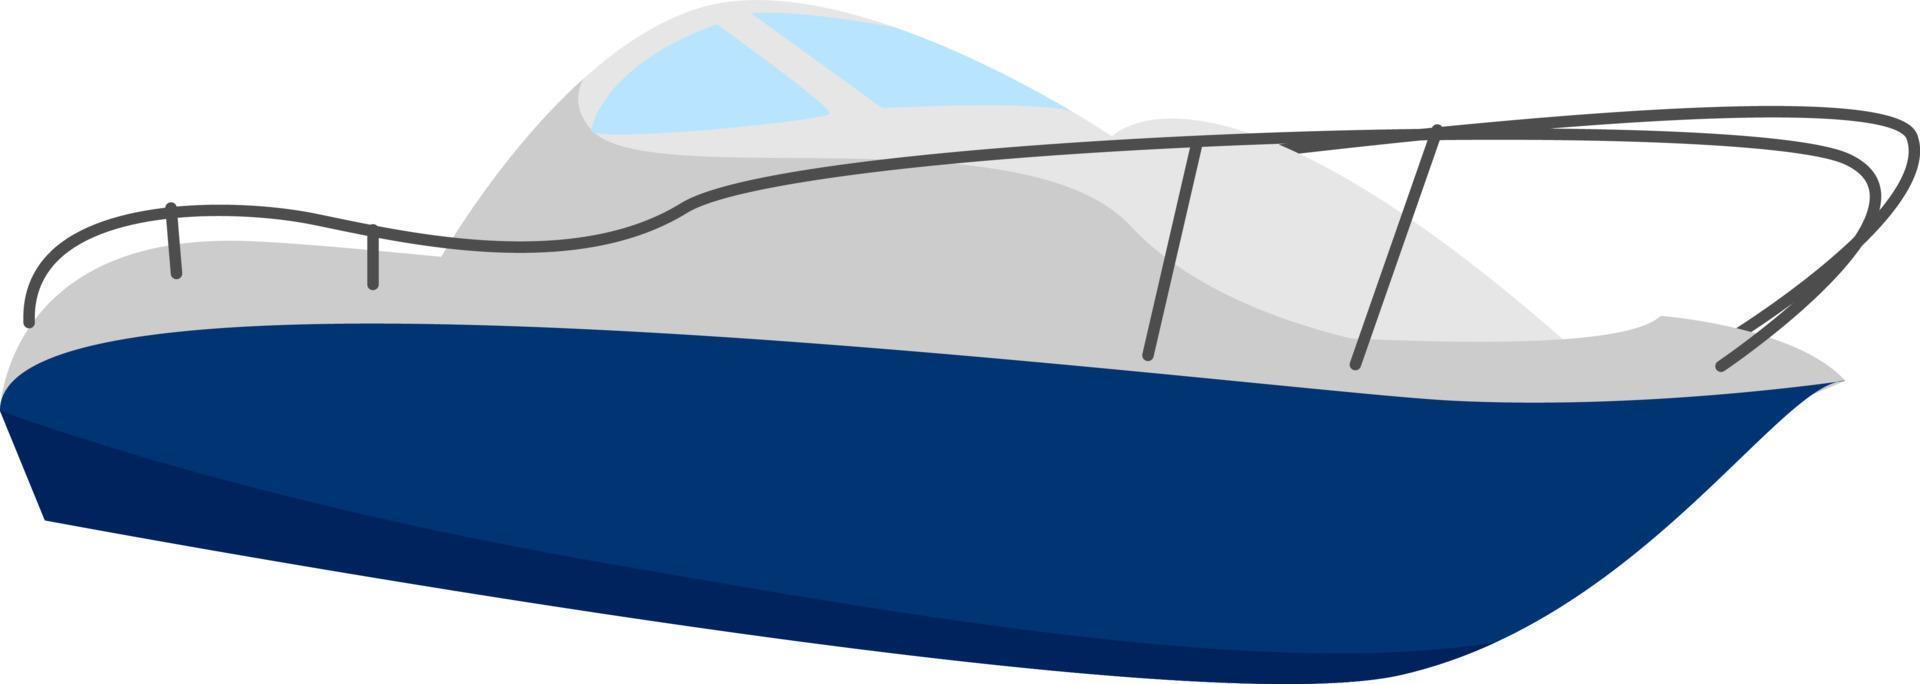 bateau rapide, illustration, vecteur sur fond blanc.